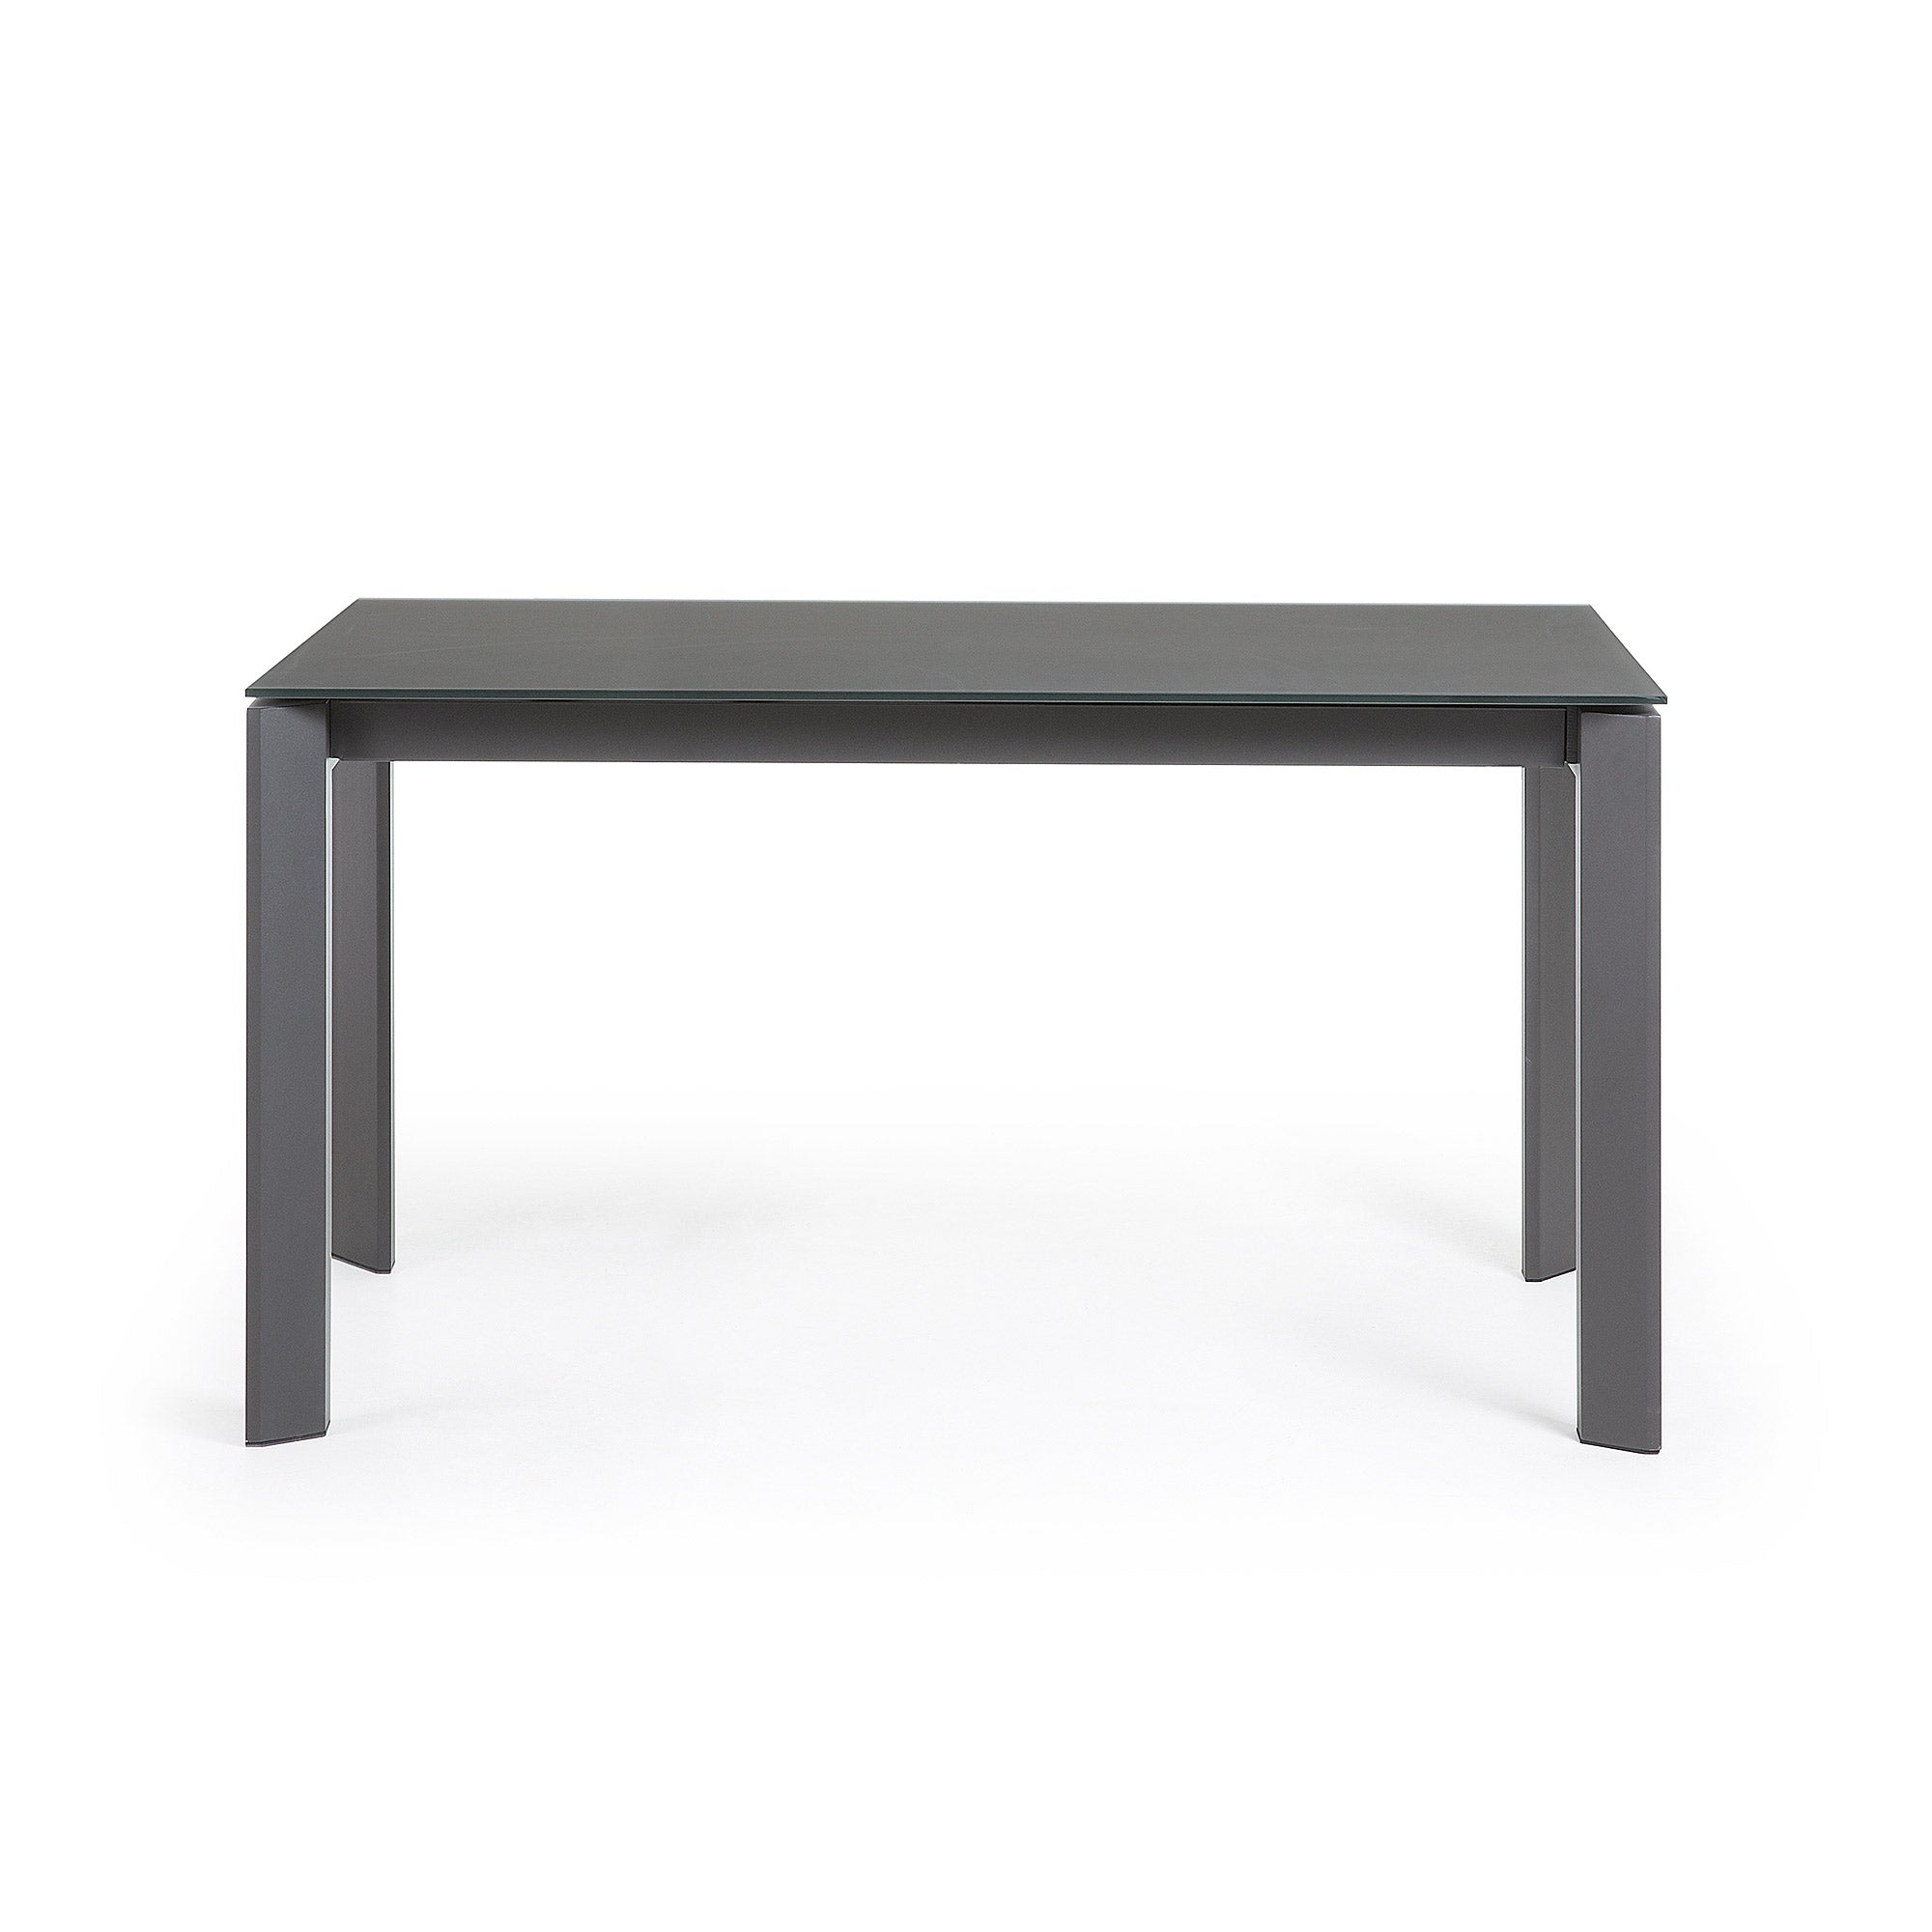 Axis kihúzható asztal szürke üvegből, sötétszürke acél lábakkal, 140 (200) cm